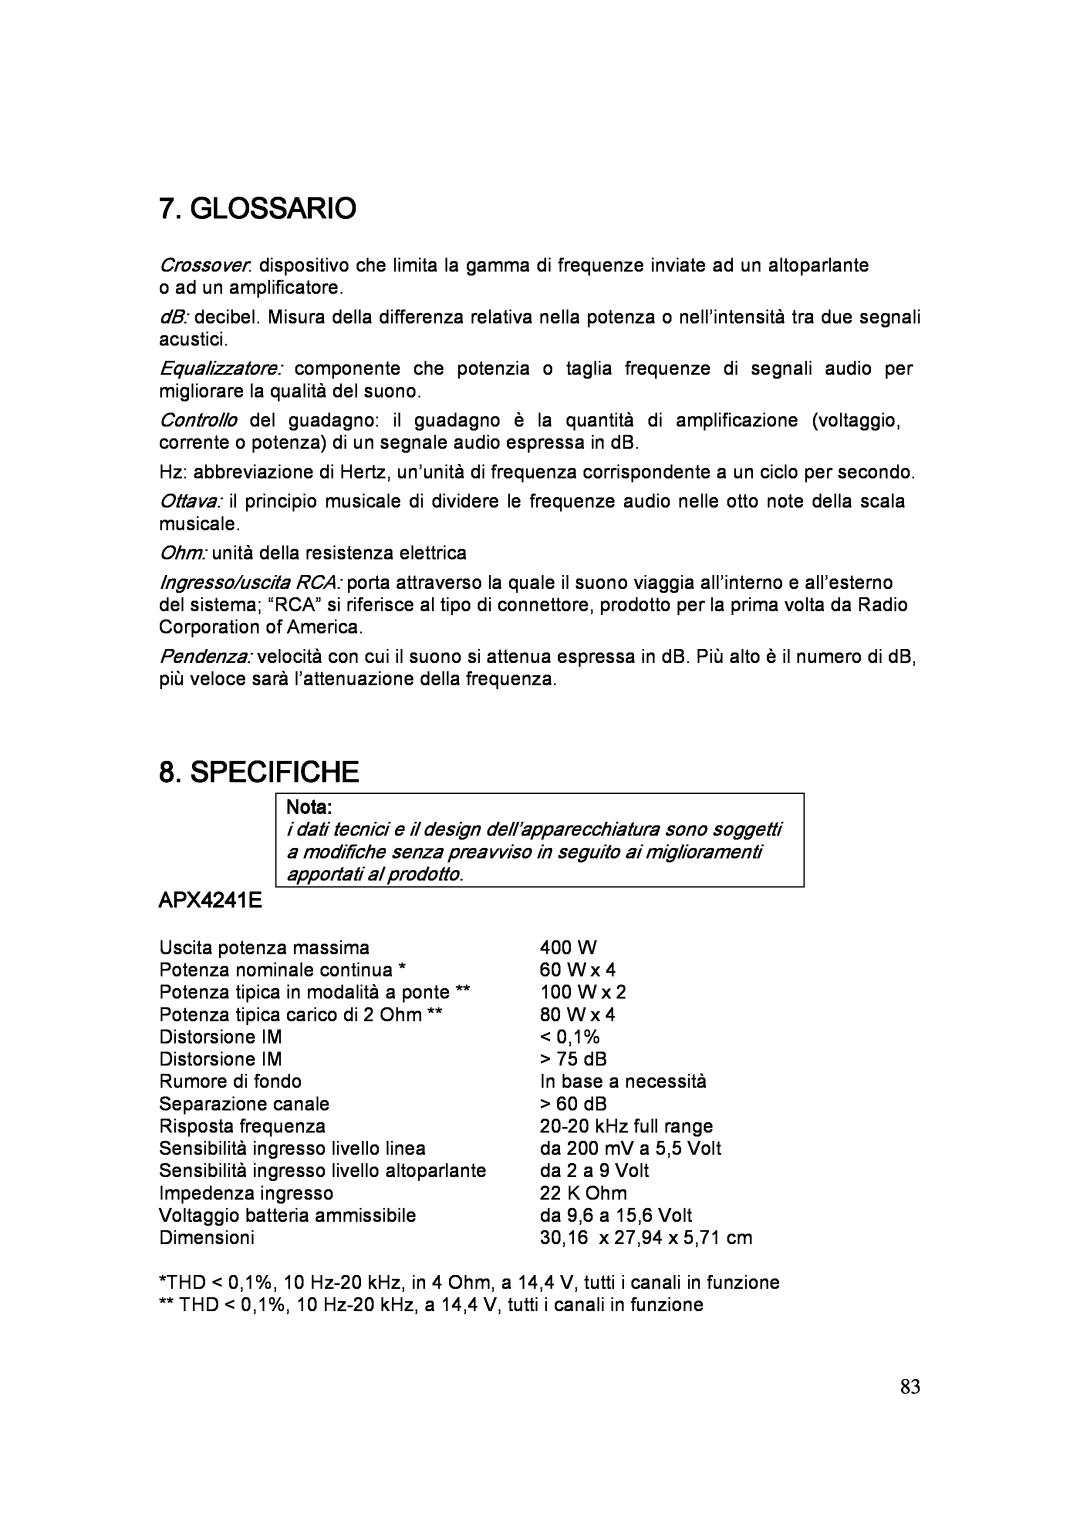 Clarion APX2121E, APX1301E manual Glossario, Specifiche, APX4241E, Nota 